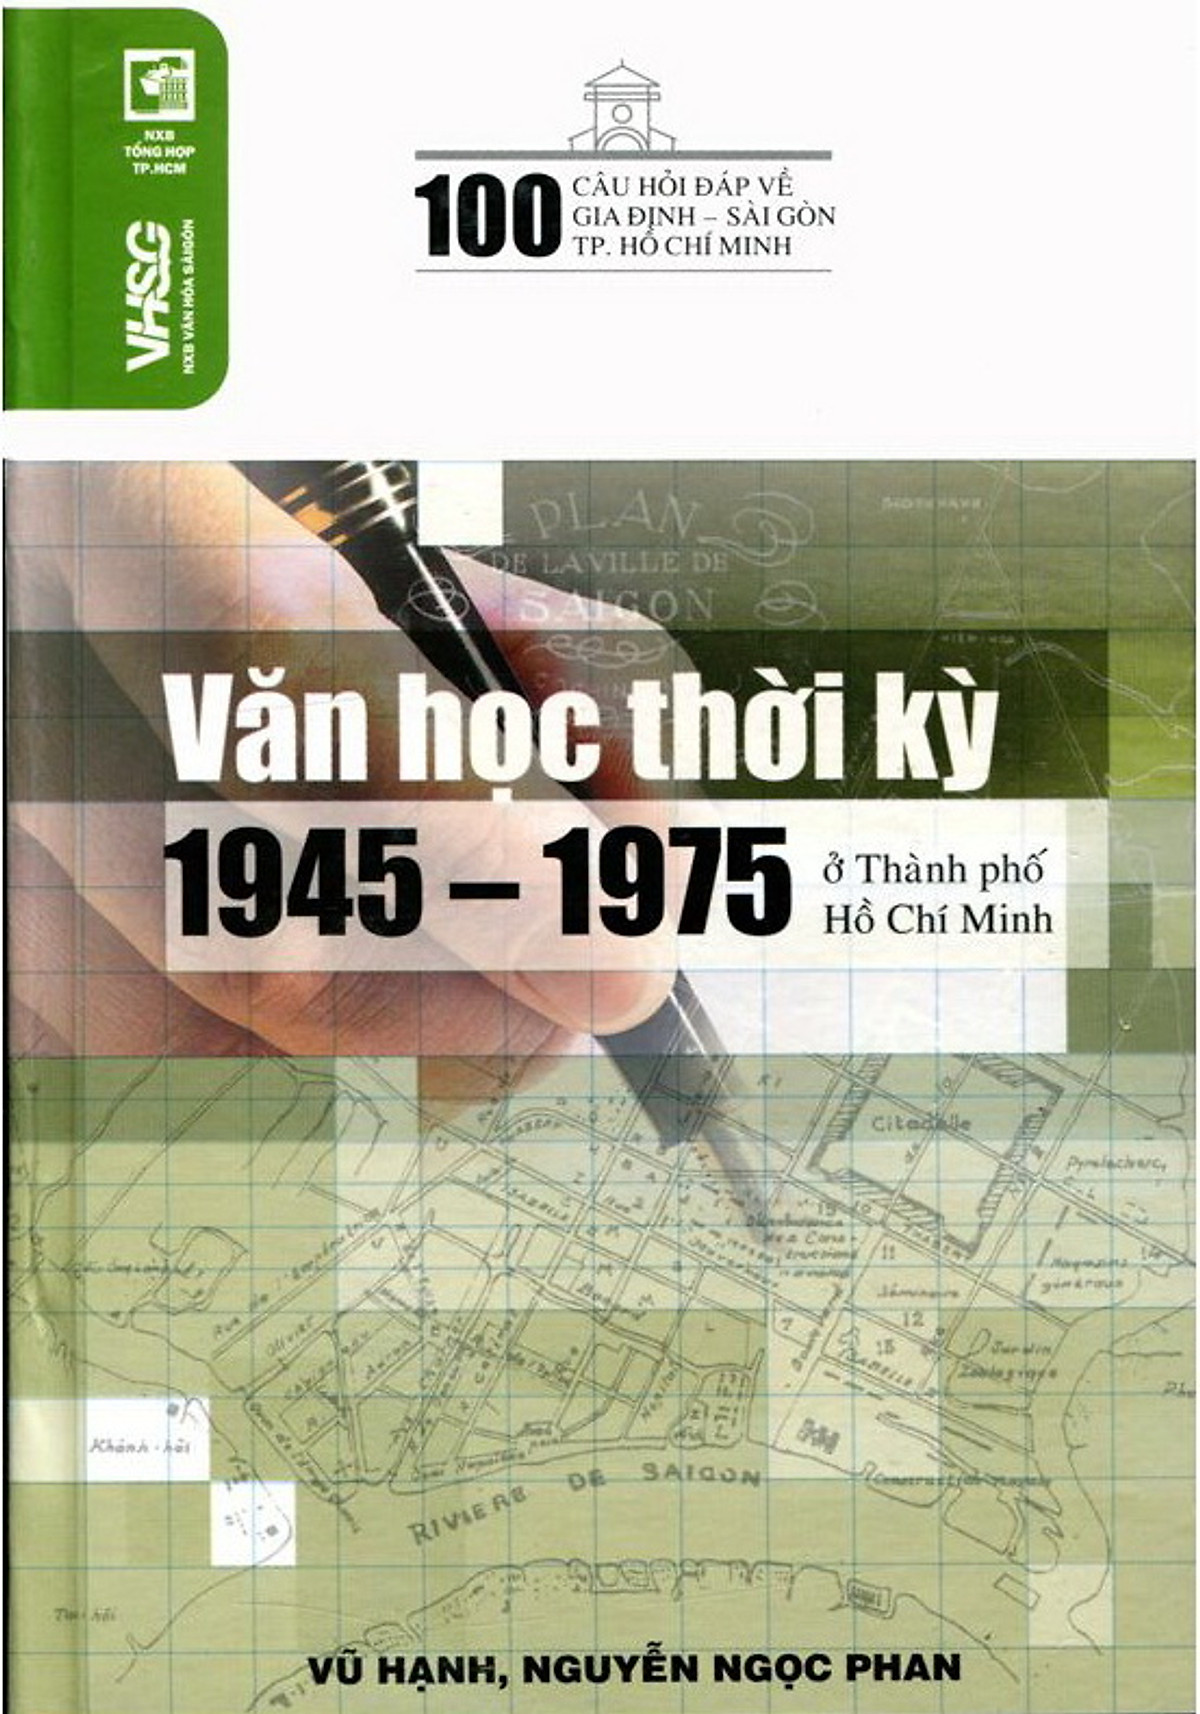 pic-100 Câu Hỏi Về Gia Định Sài Gòn - Văn Học Thời Kỳ 1945 - 1975 Ở Thành Phố Hồ Chí Minh